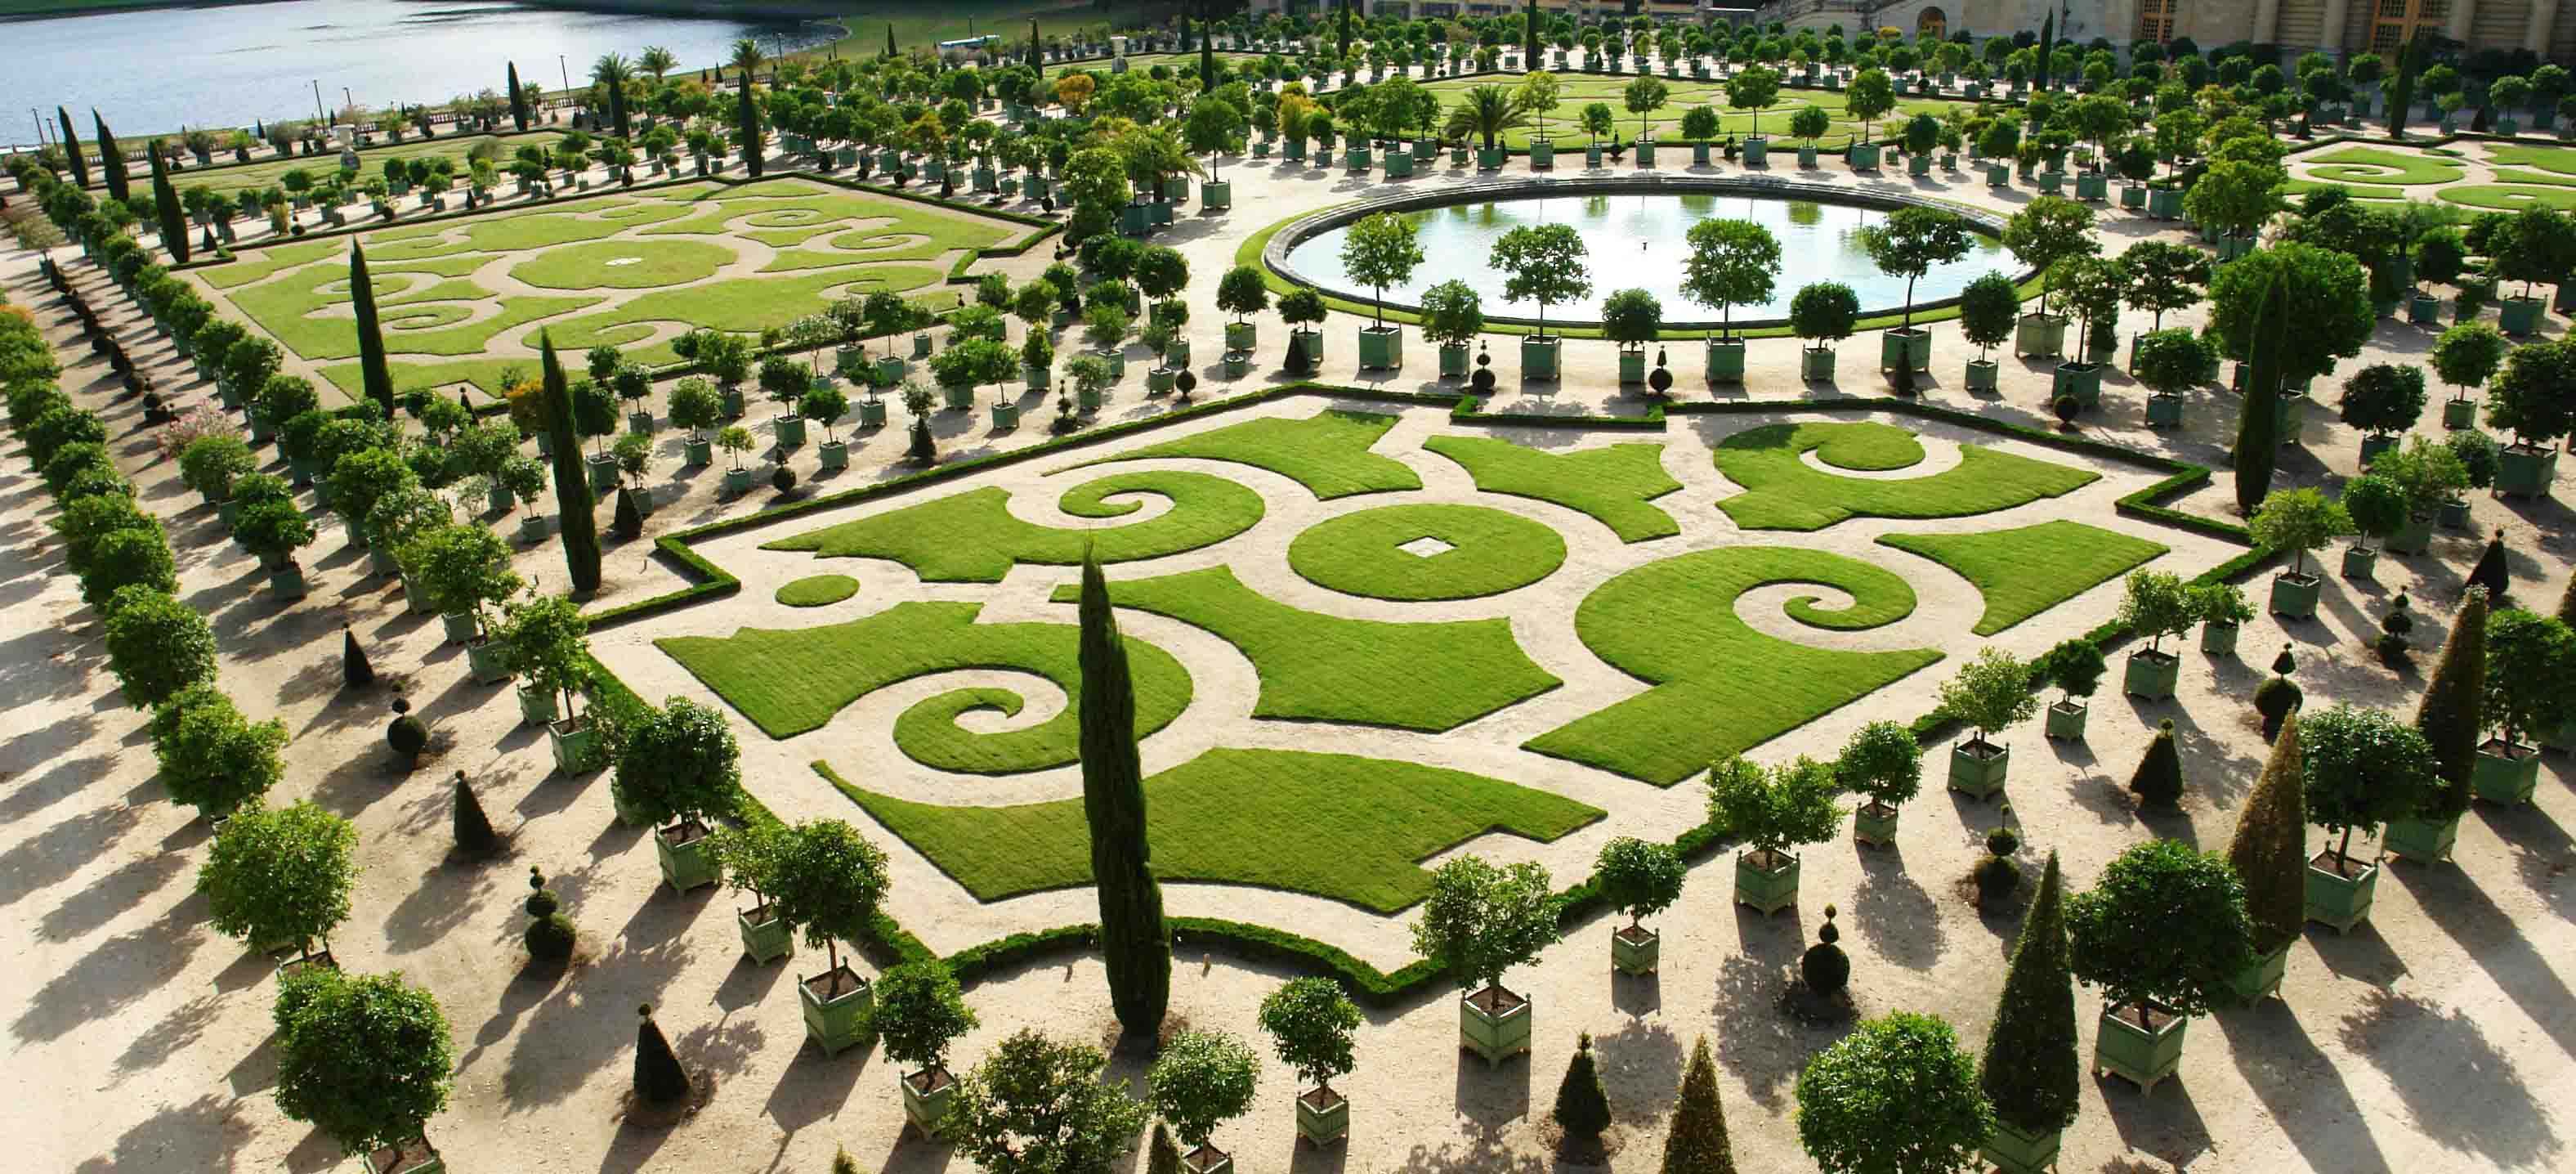 凡尔赛宫的后花园与中国园林仿真手法不同的是,欧洲的园林是在改造